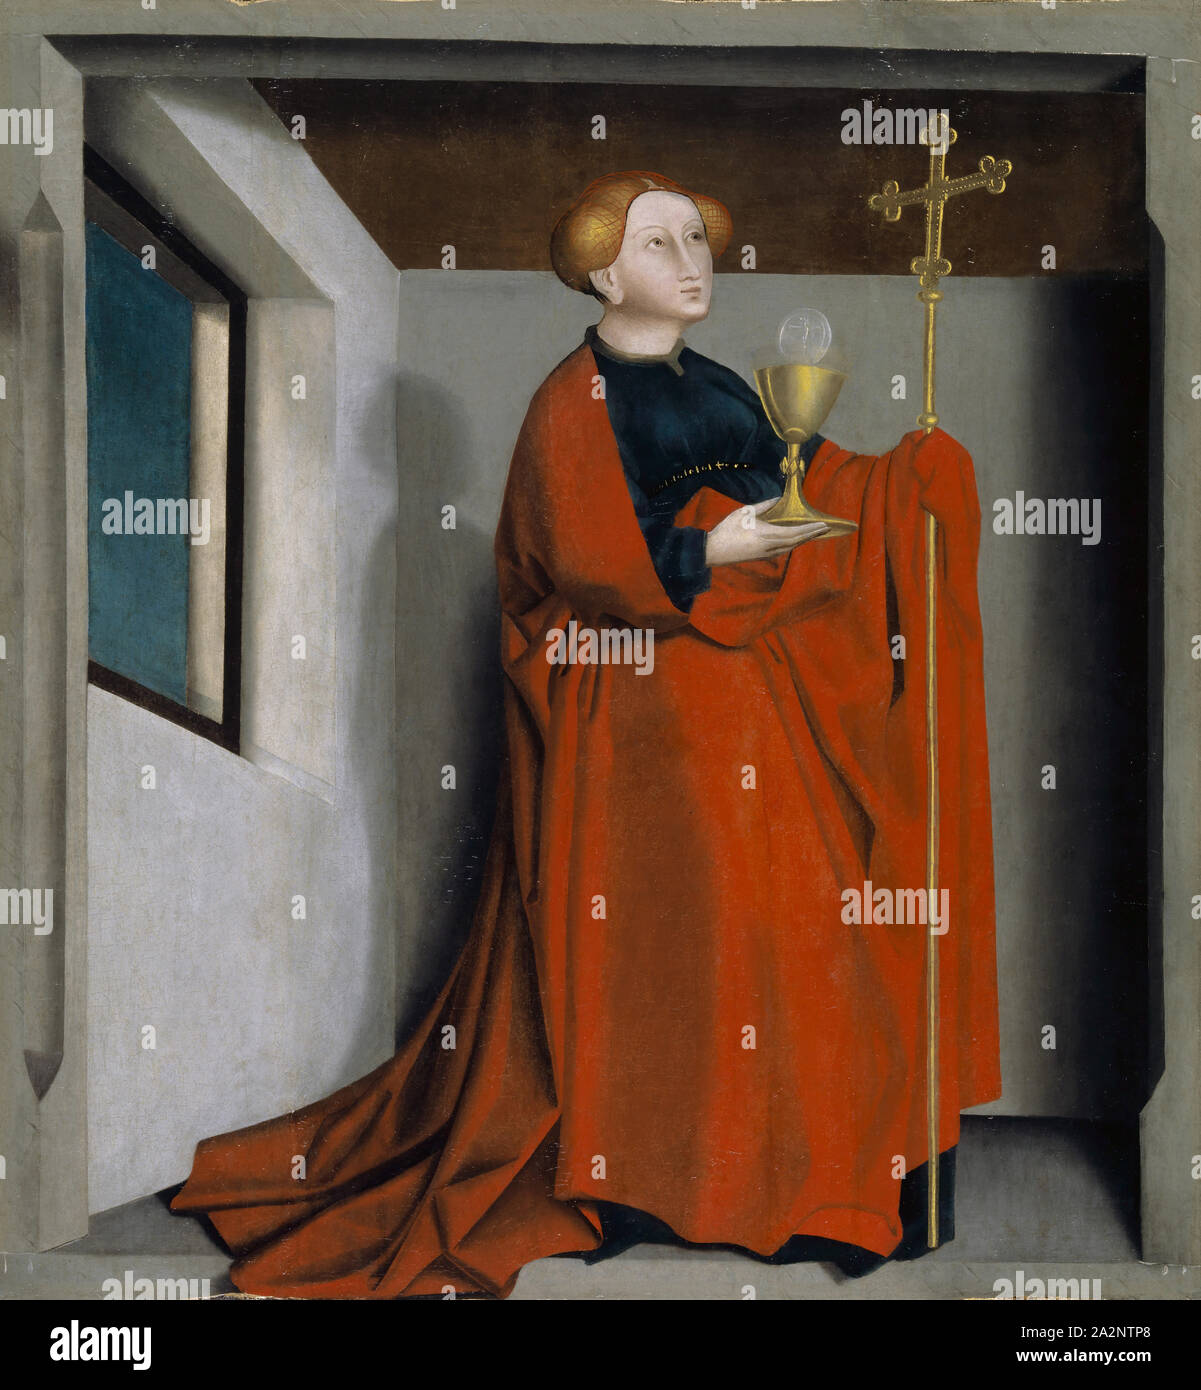 Ecclesia, ch. 1435, technique mixte sur toile chêne laminé, 86,5 x 80,5 cm, non spécifié, Konrad Witz, Rottweil um 1400 - um 1445/47 Banque D'Images